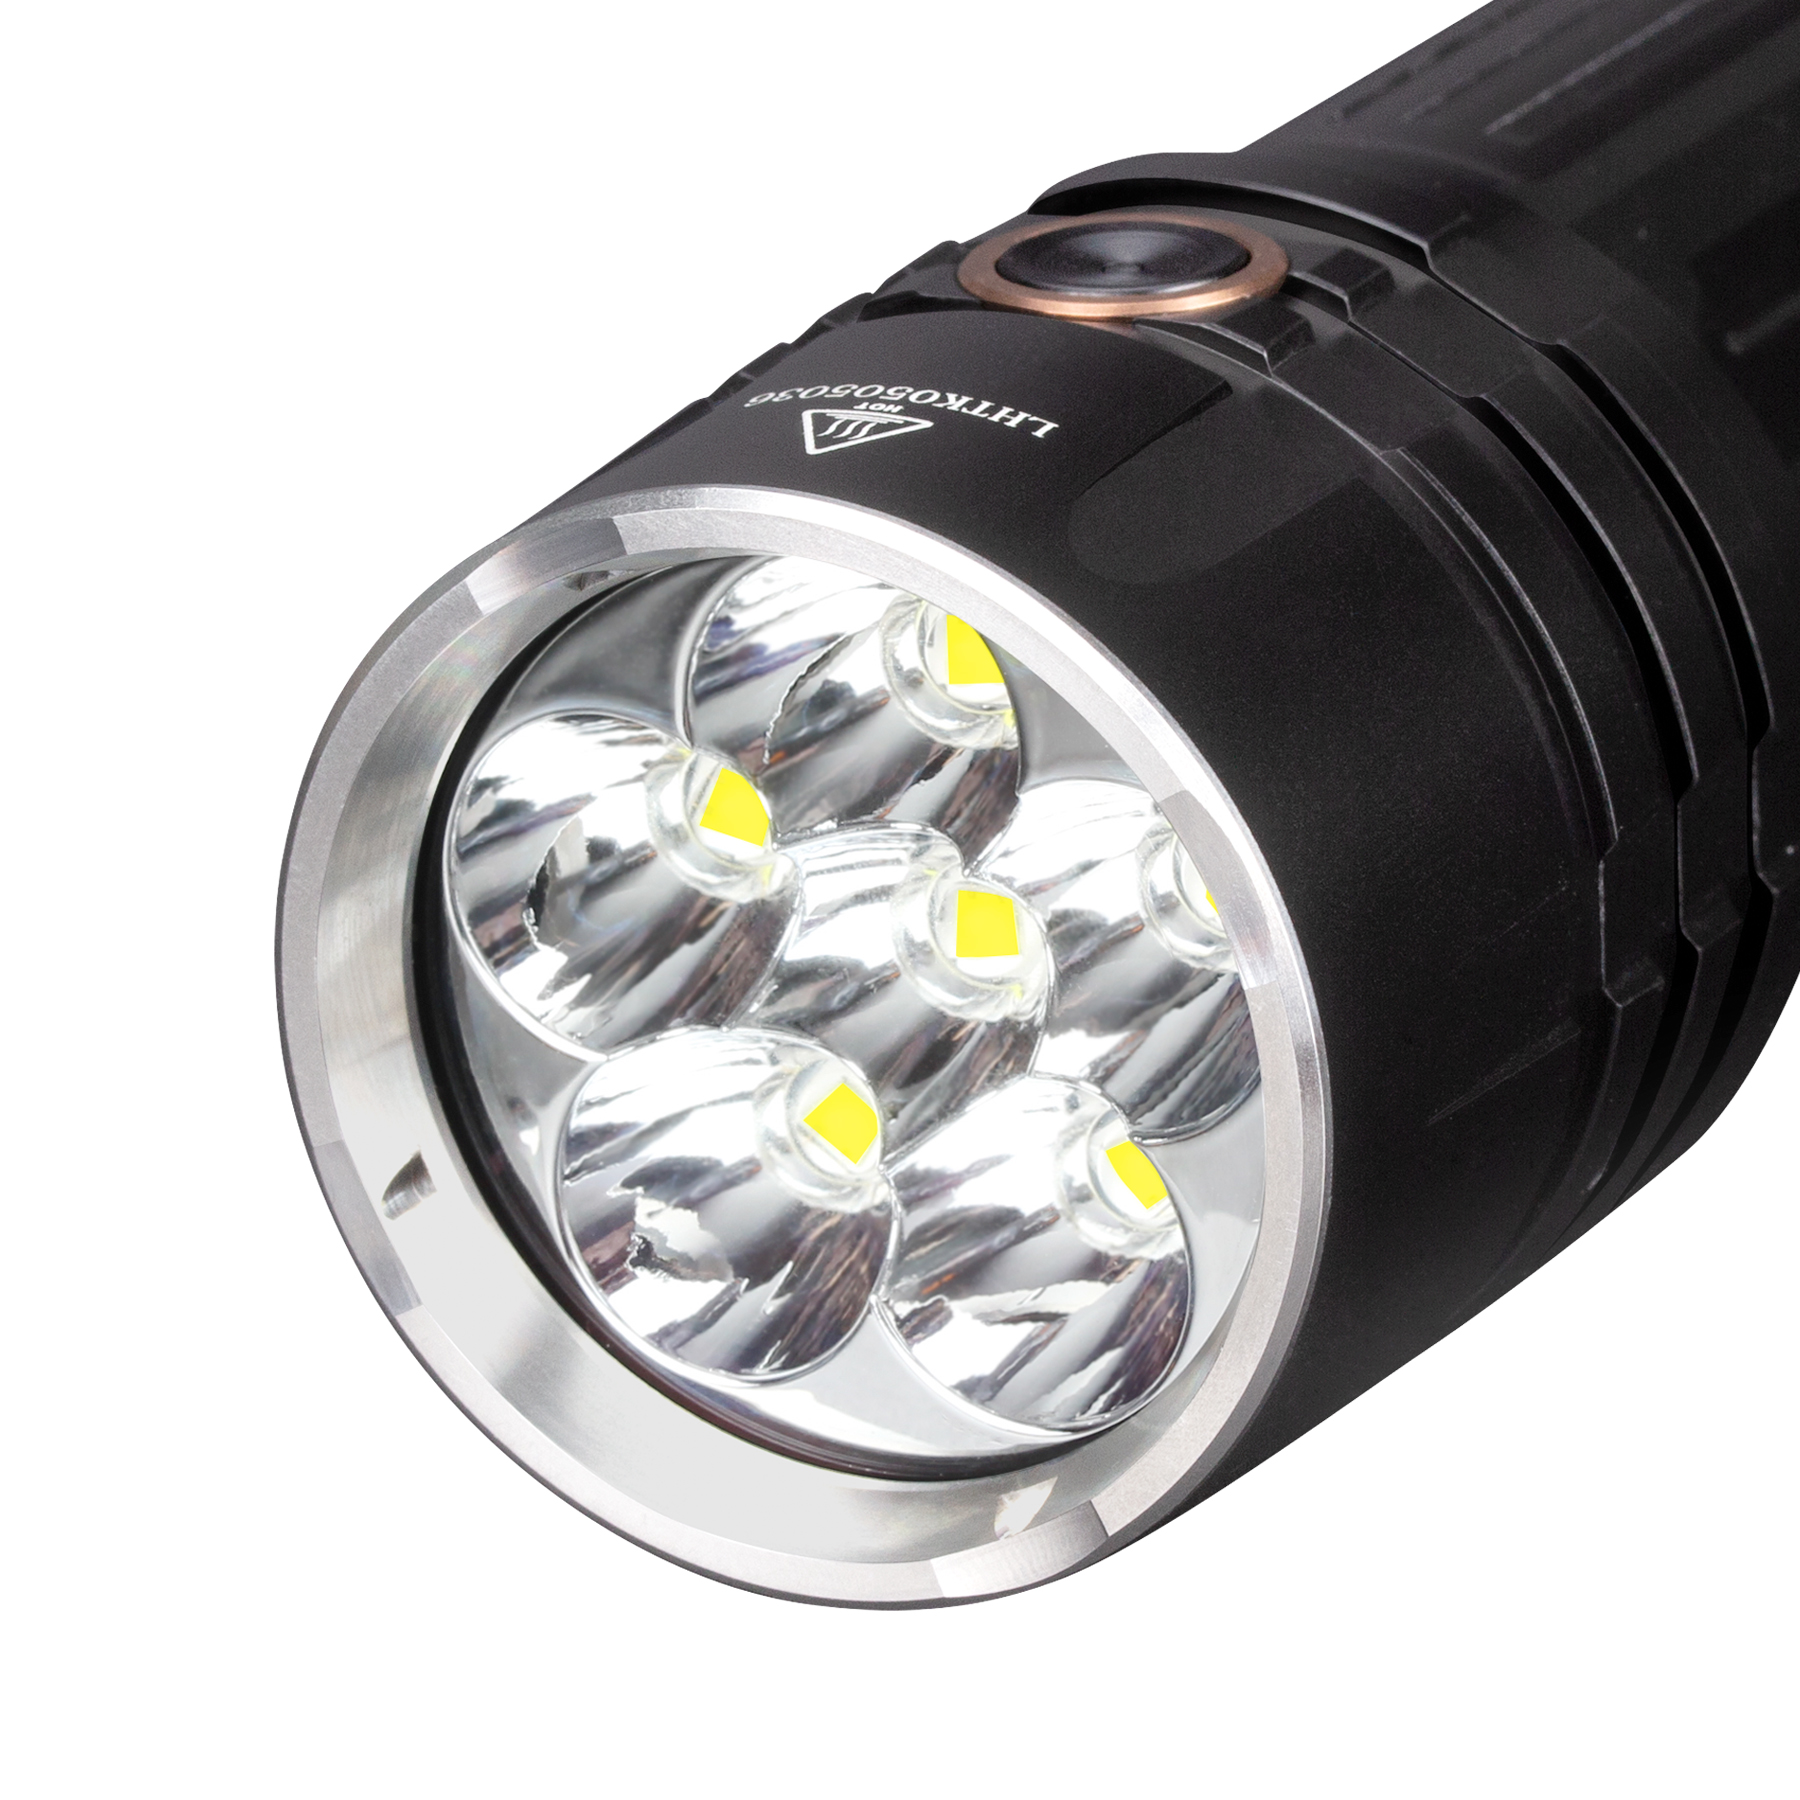 Đèn pin Fenix – LR35R SST40 – 10000 Lumens